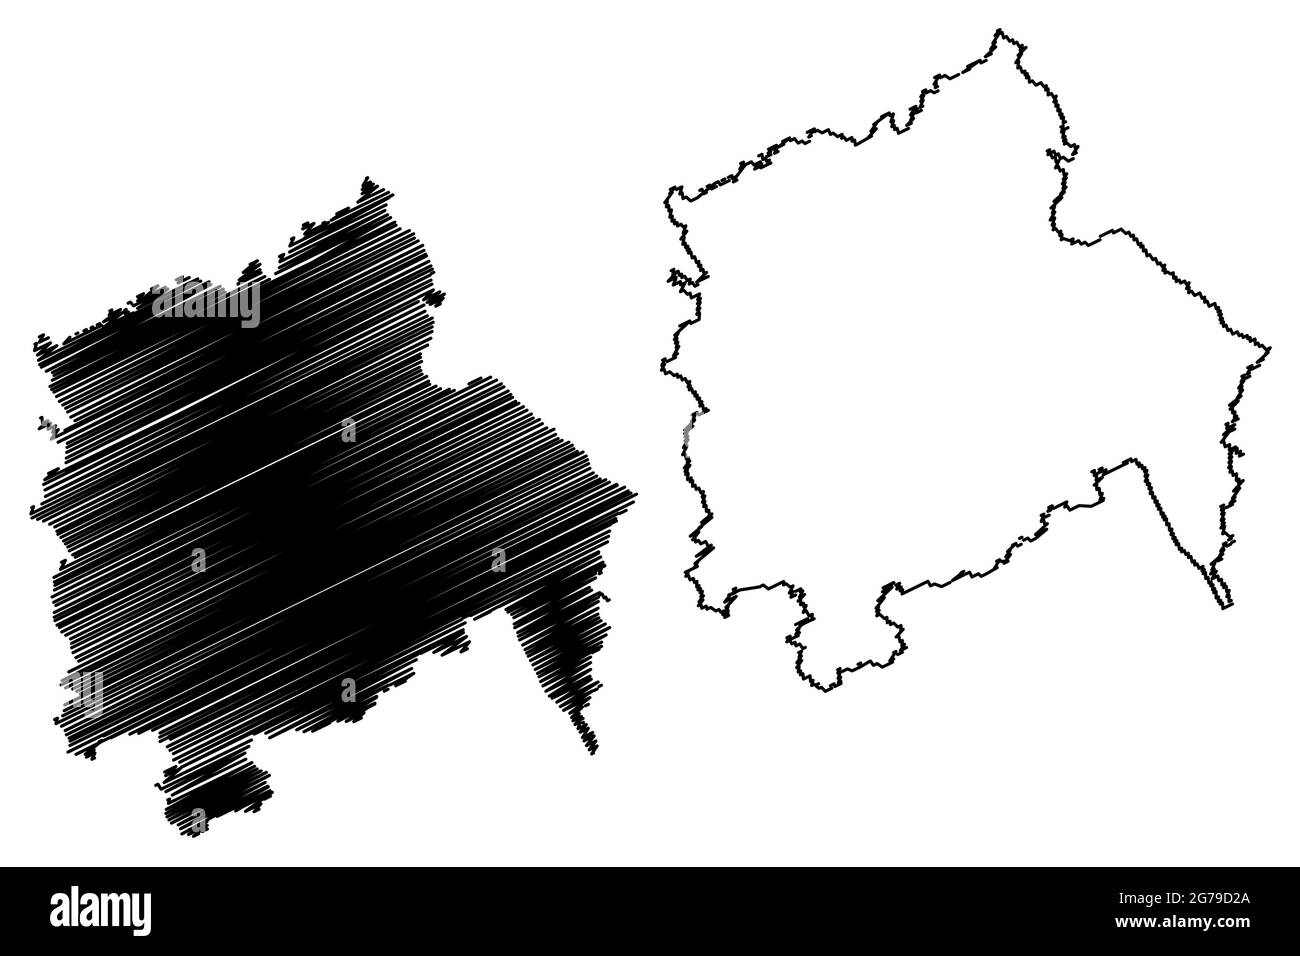 Landkreis Hameln-Pyrmont (Bundesrepublik Deutschland, Landkreis, Bundesland Niedersachsen) Kartenvektordarstellung, Scribble-Skizze Hameln Pyrmont m Stock Vektor